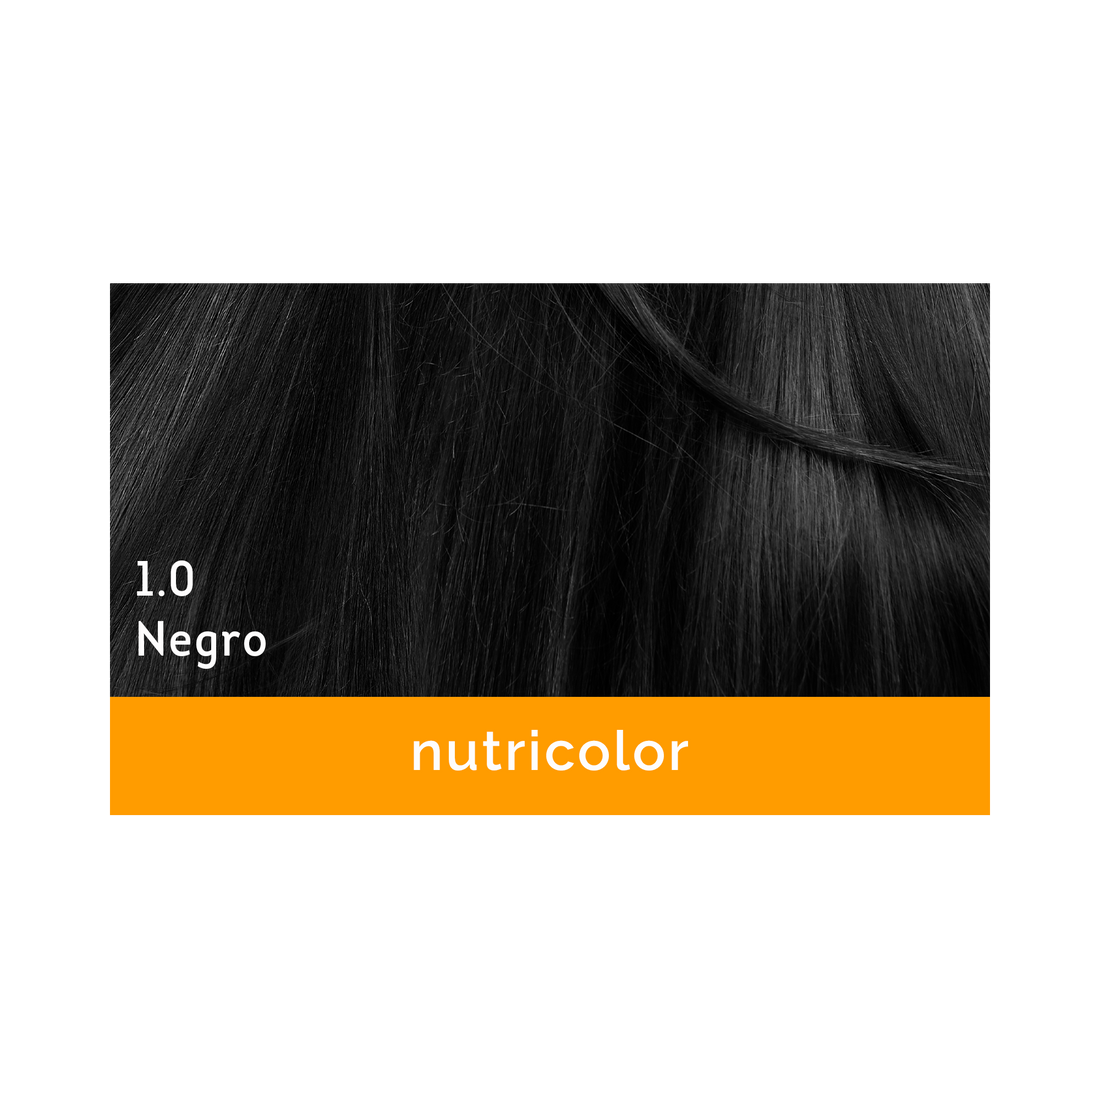 Biokap - Nutricolor - Tinte (Elegir color entre 15 diferentes tonos) El descuento se aplicara solo para el 10.0 Rubio  140 ml - ebeauty